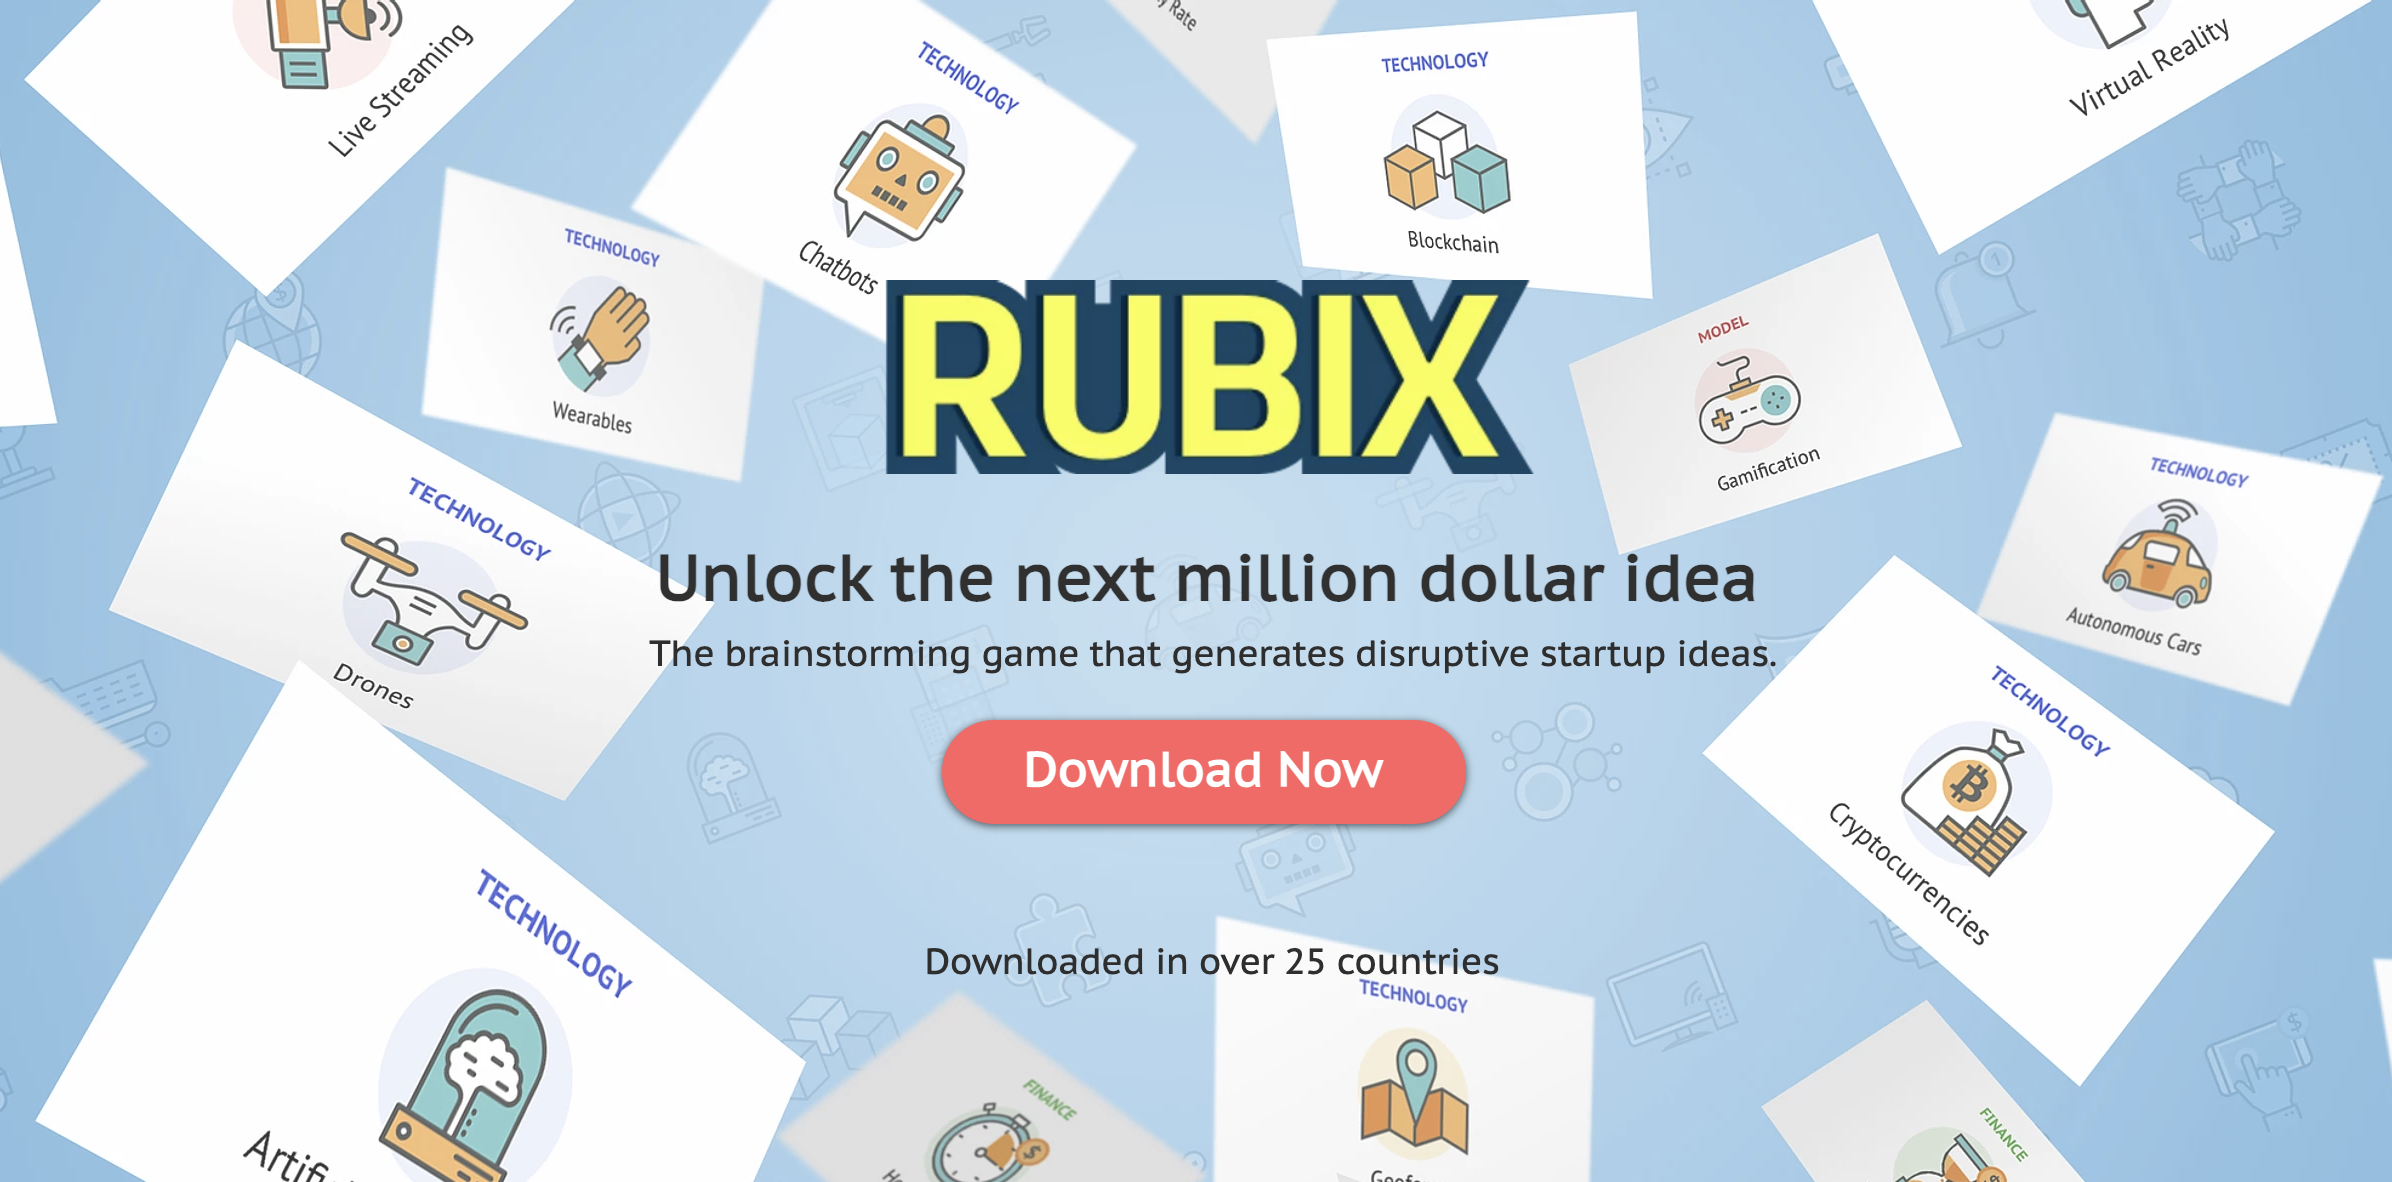 RUBIX toolkit